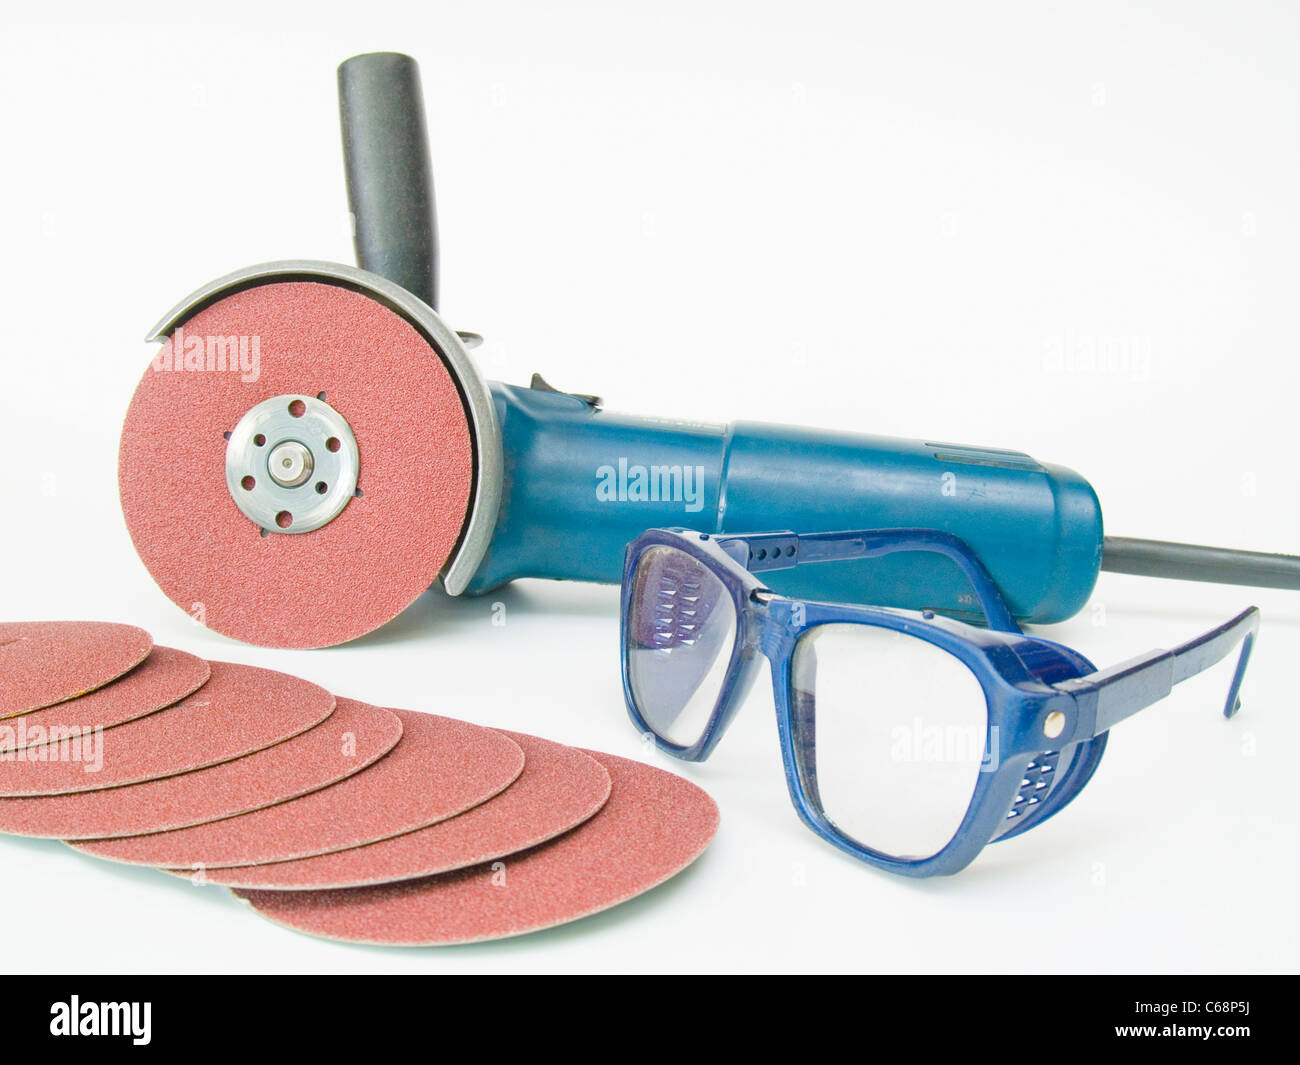 Winkelschleifer Mit Schutzbrille Und Schleifscheiben | Winkelschleifer mit Schutzbrillen und Schleifscheiben Stockfoto